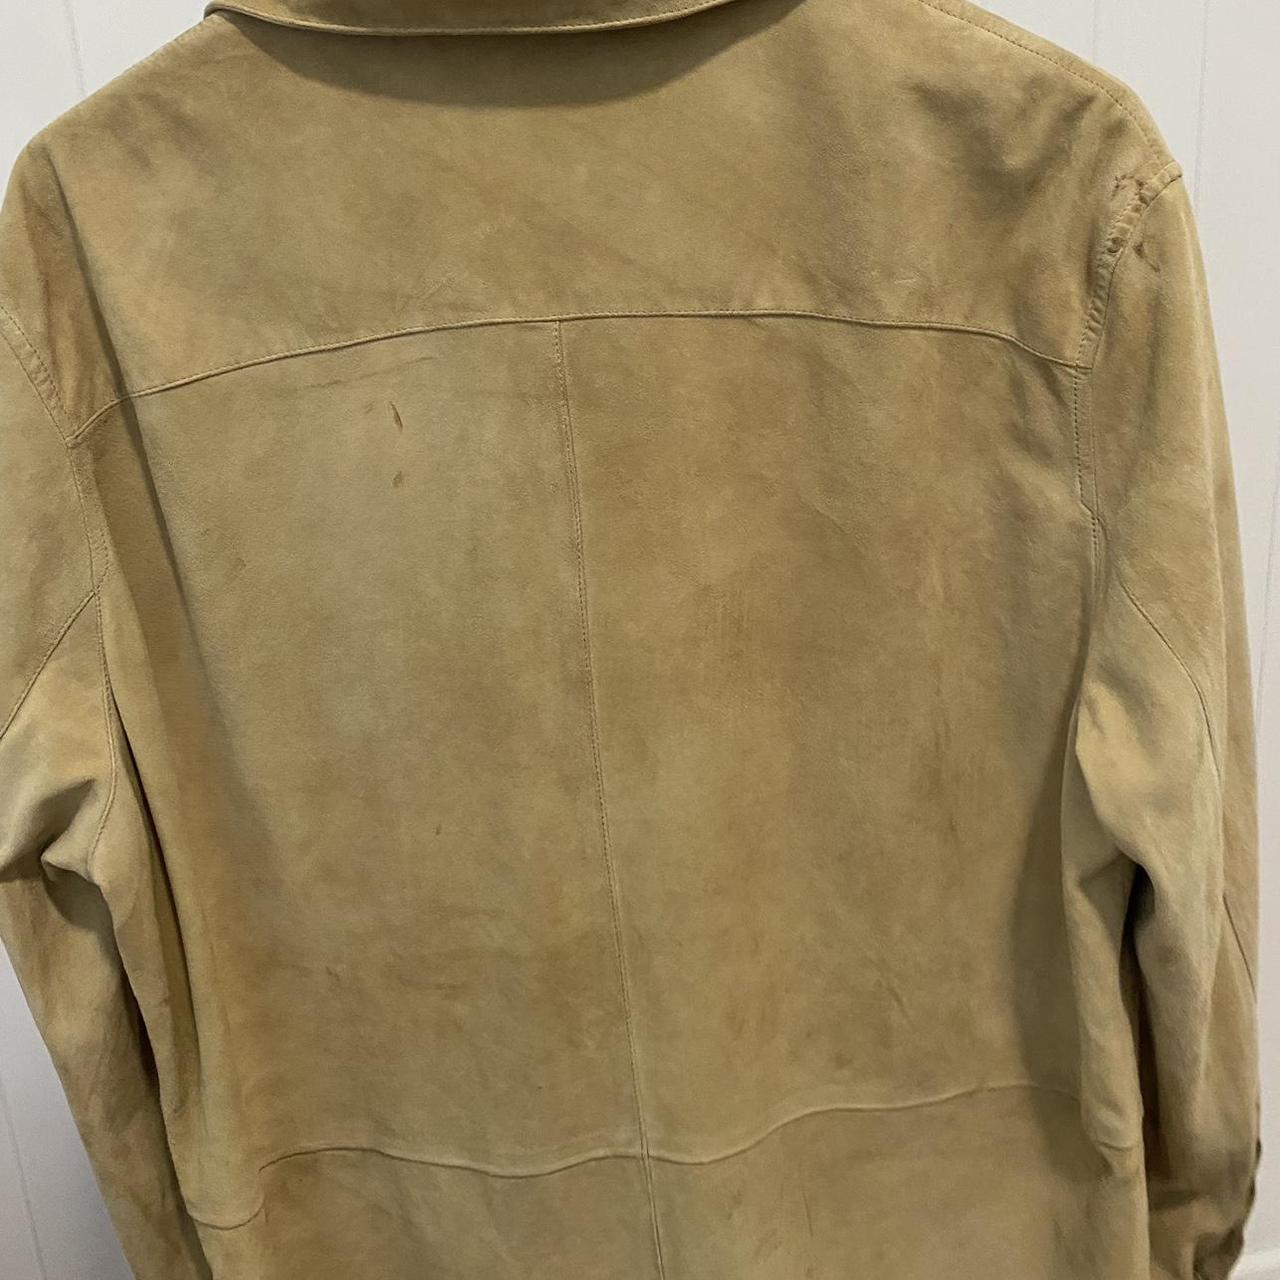 Vintage suede Ralph Lauren jacket hand made in... - Depop